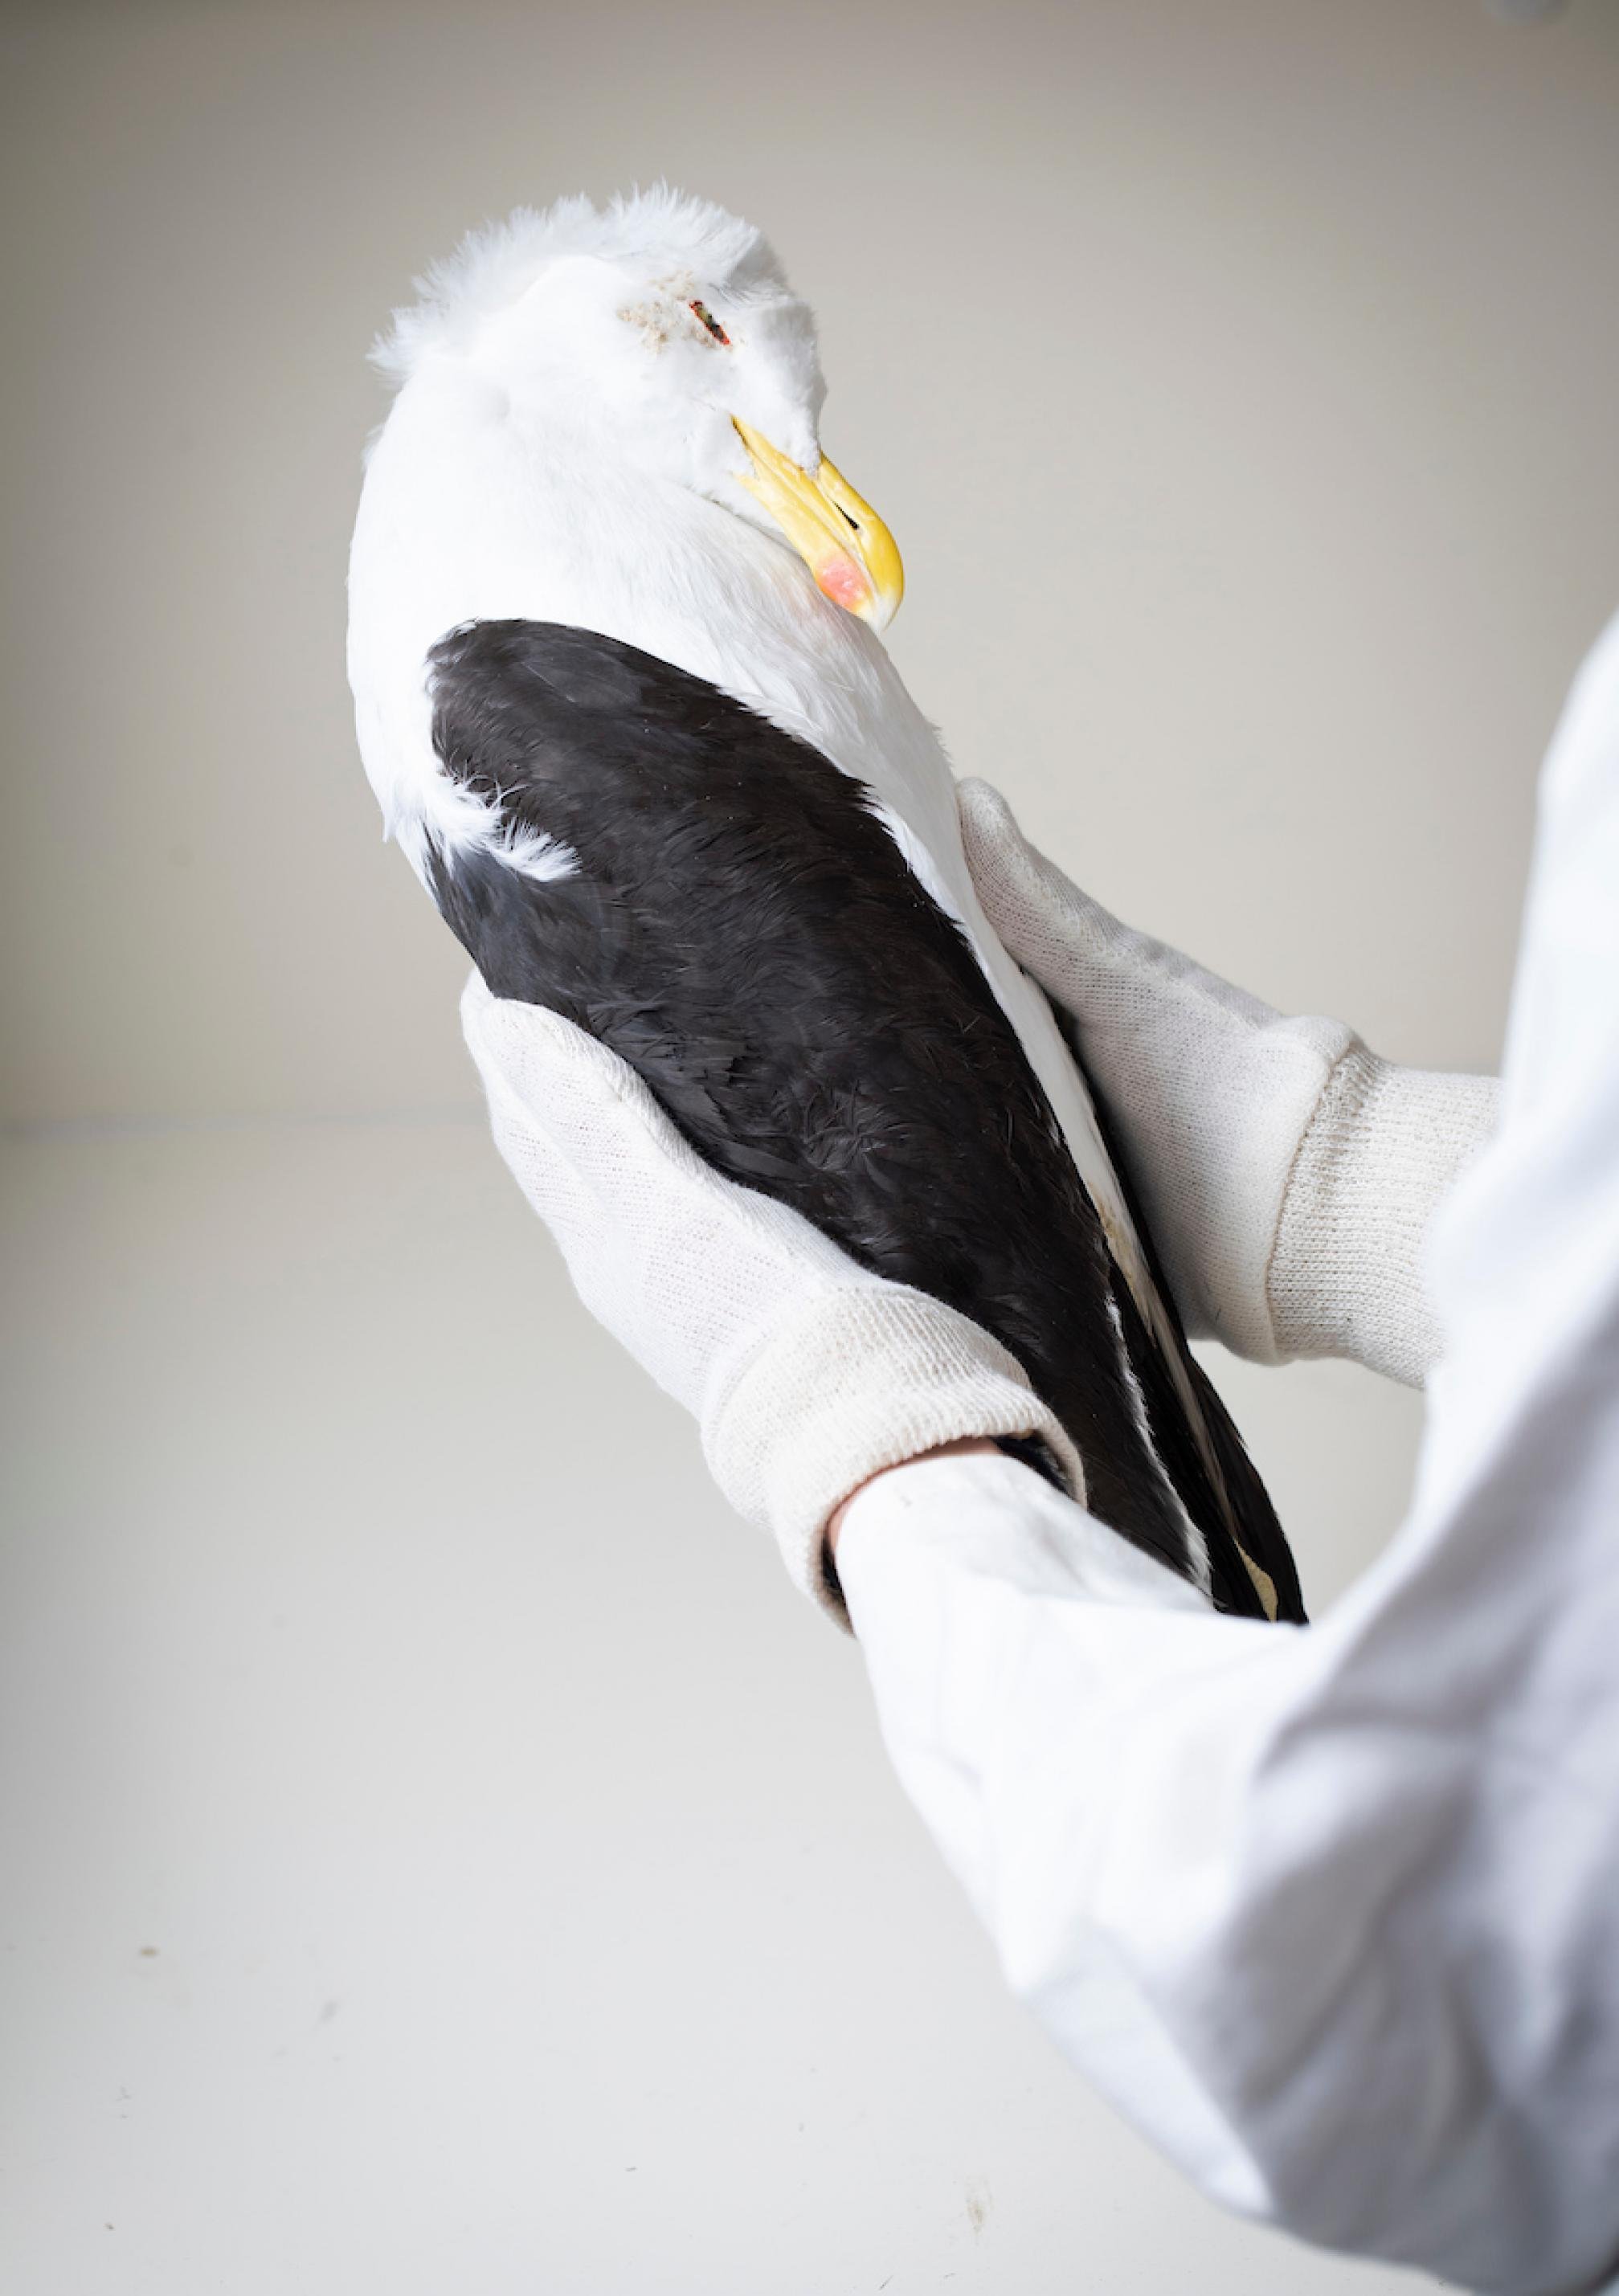 Denise Hardesty hält eine tote Dickschnabelmöwe in der Hand. Der Mageninhalt des Vogels hilft bei der Forschung.